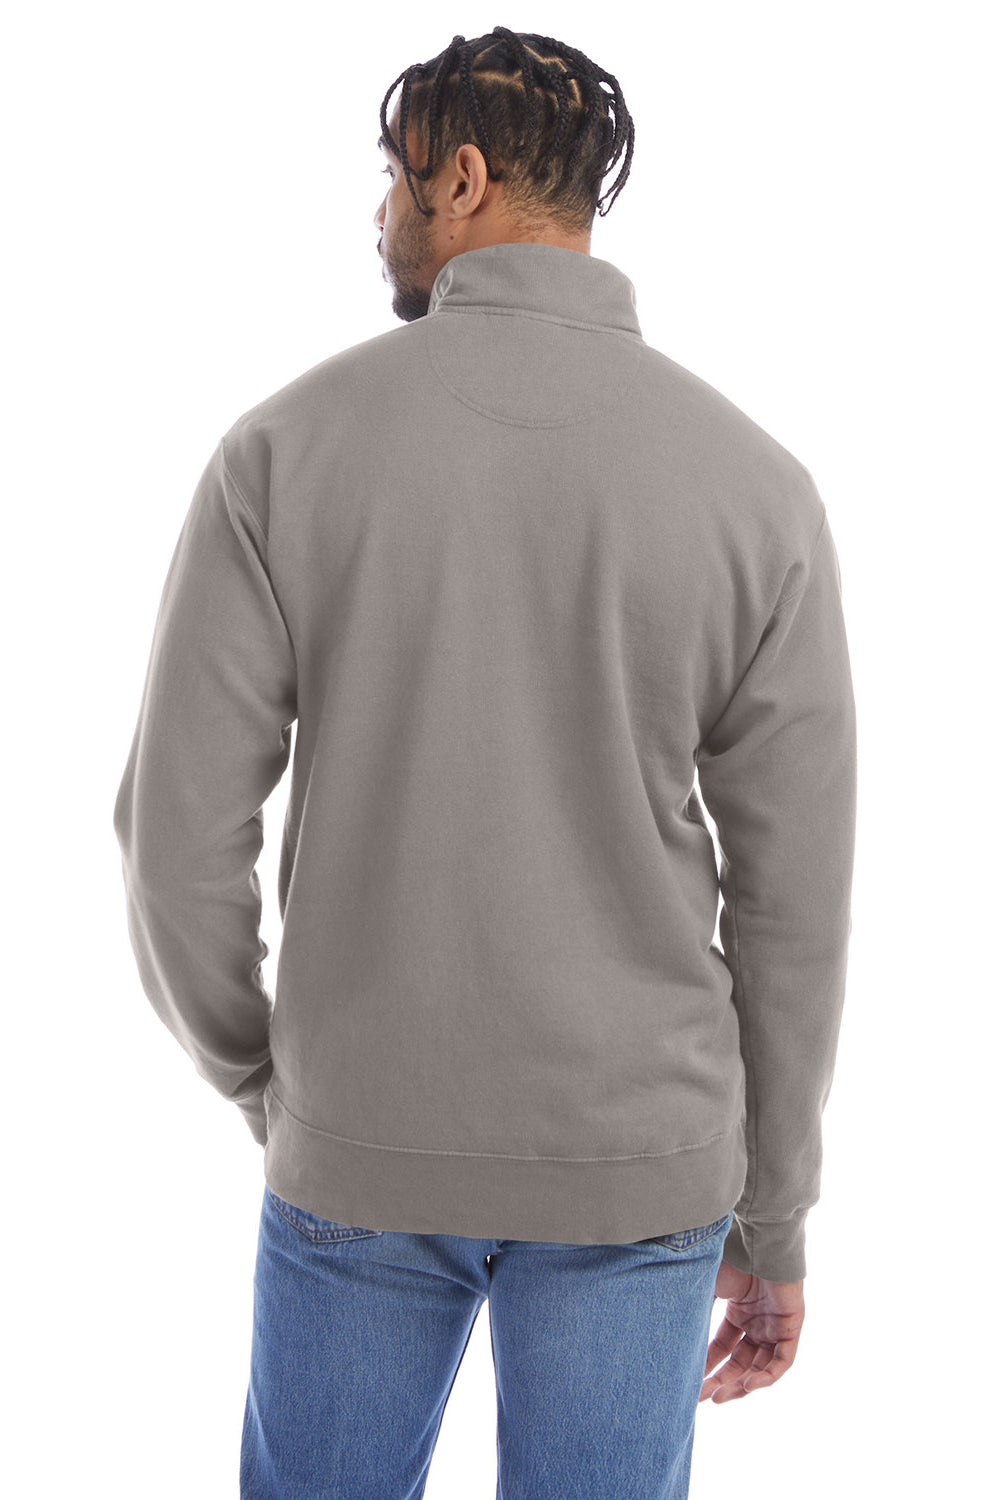 ComfortWash by Hanes GDH425 Mens 1/4 Zip Sweatshirt Concrete Grey Back